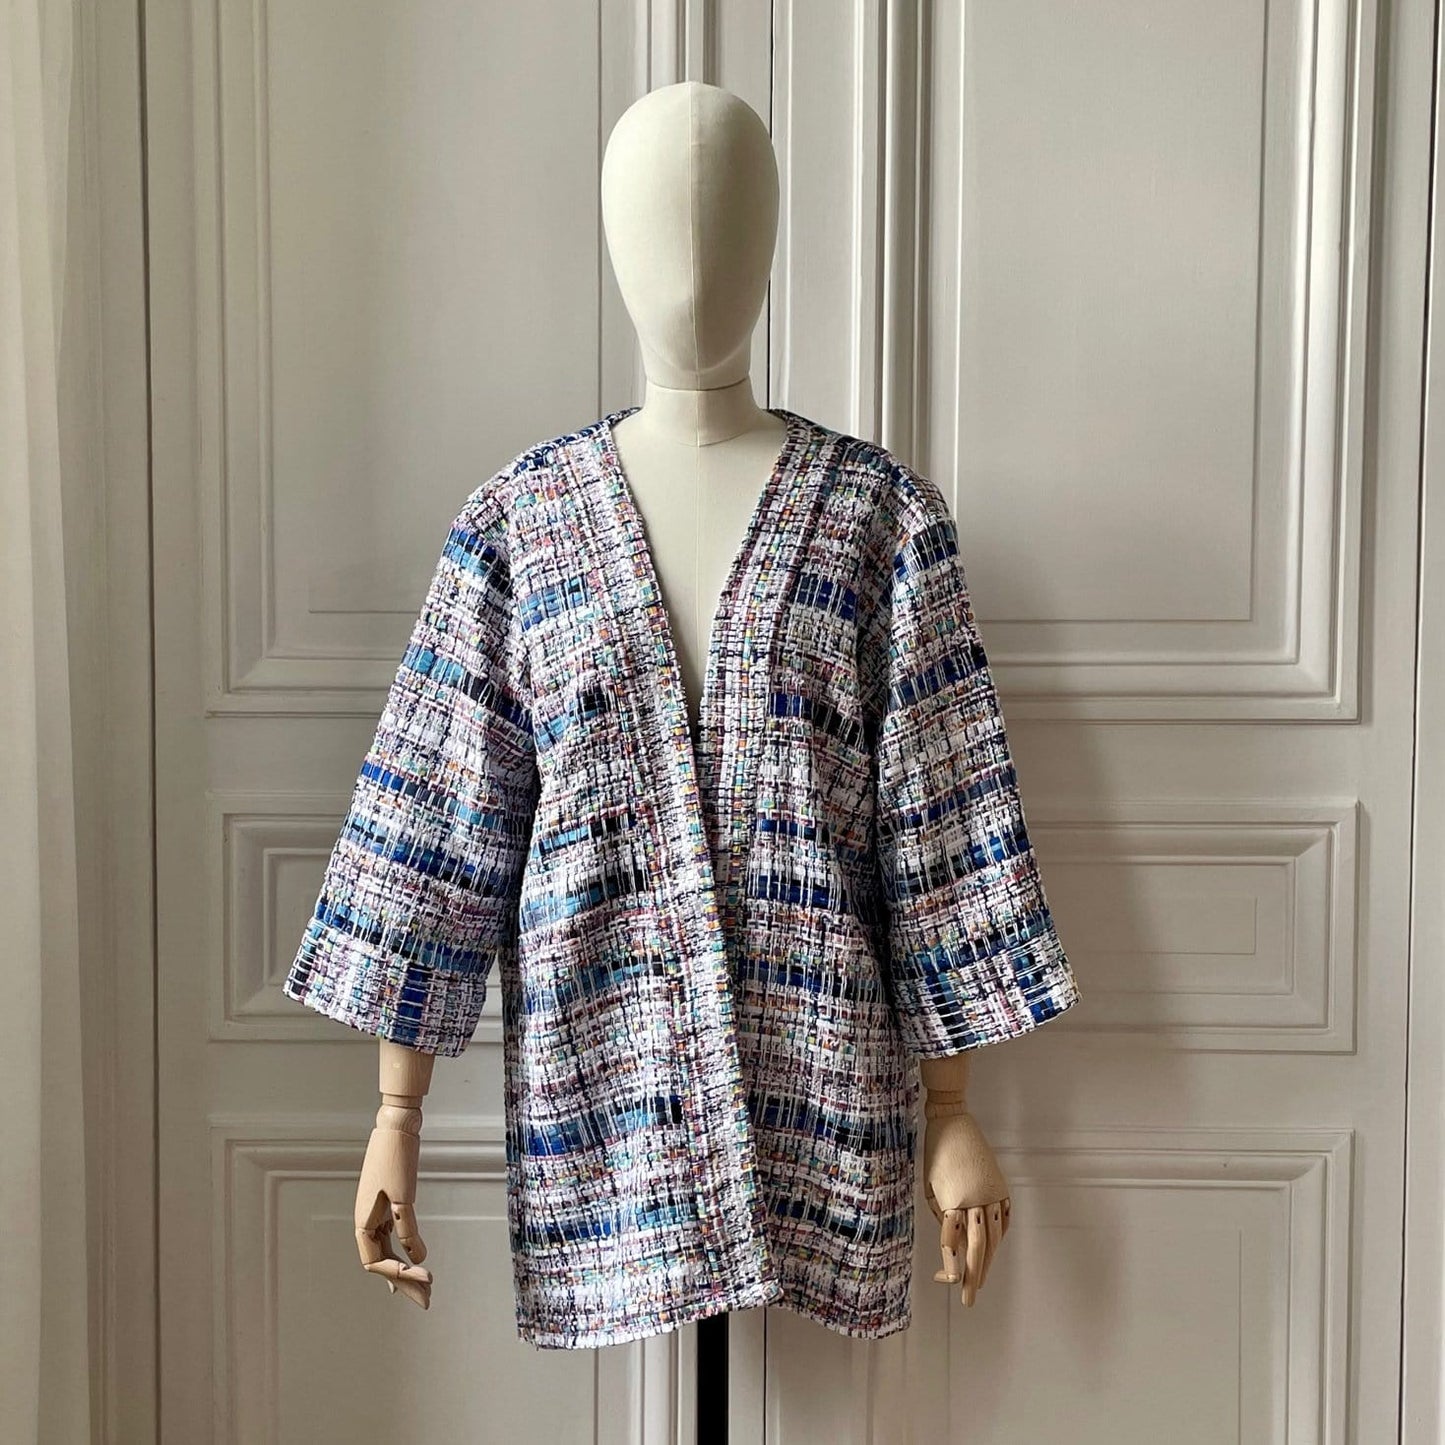 Kimono en tweed bleu ciel et blanc tissé et fabriqué en France